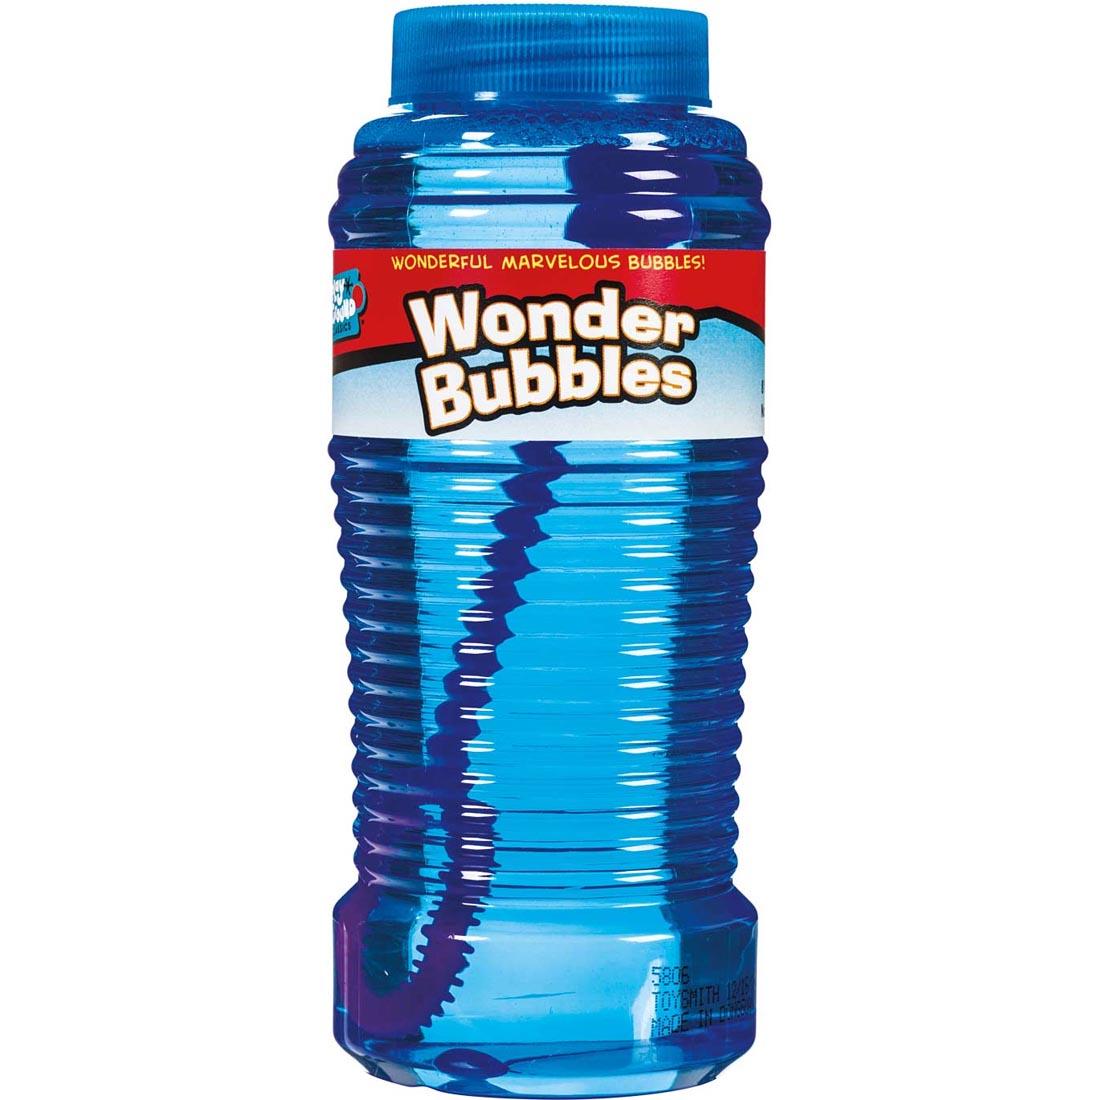 Bottle of Wonder Bubbles